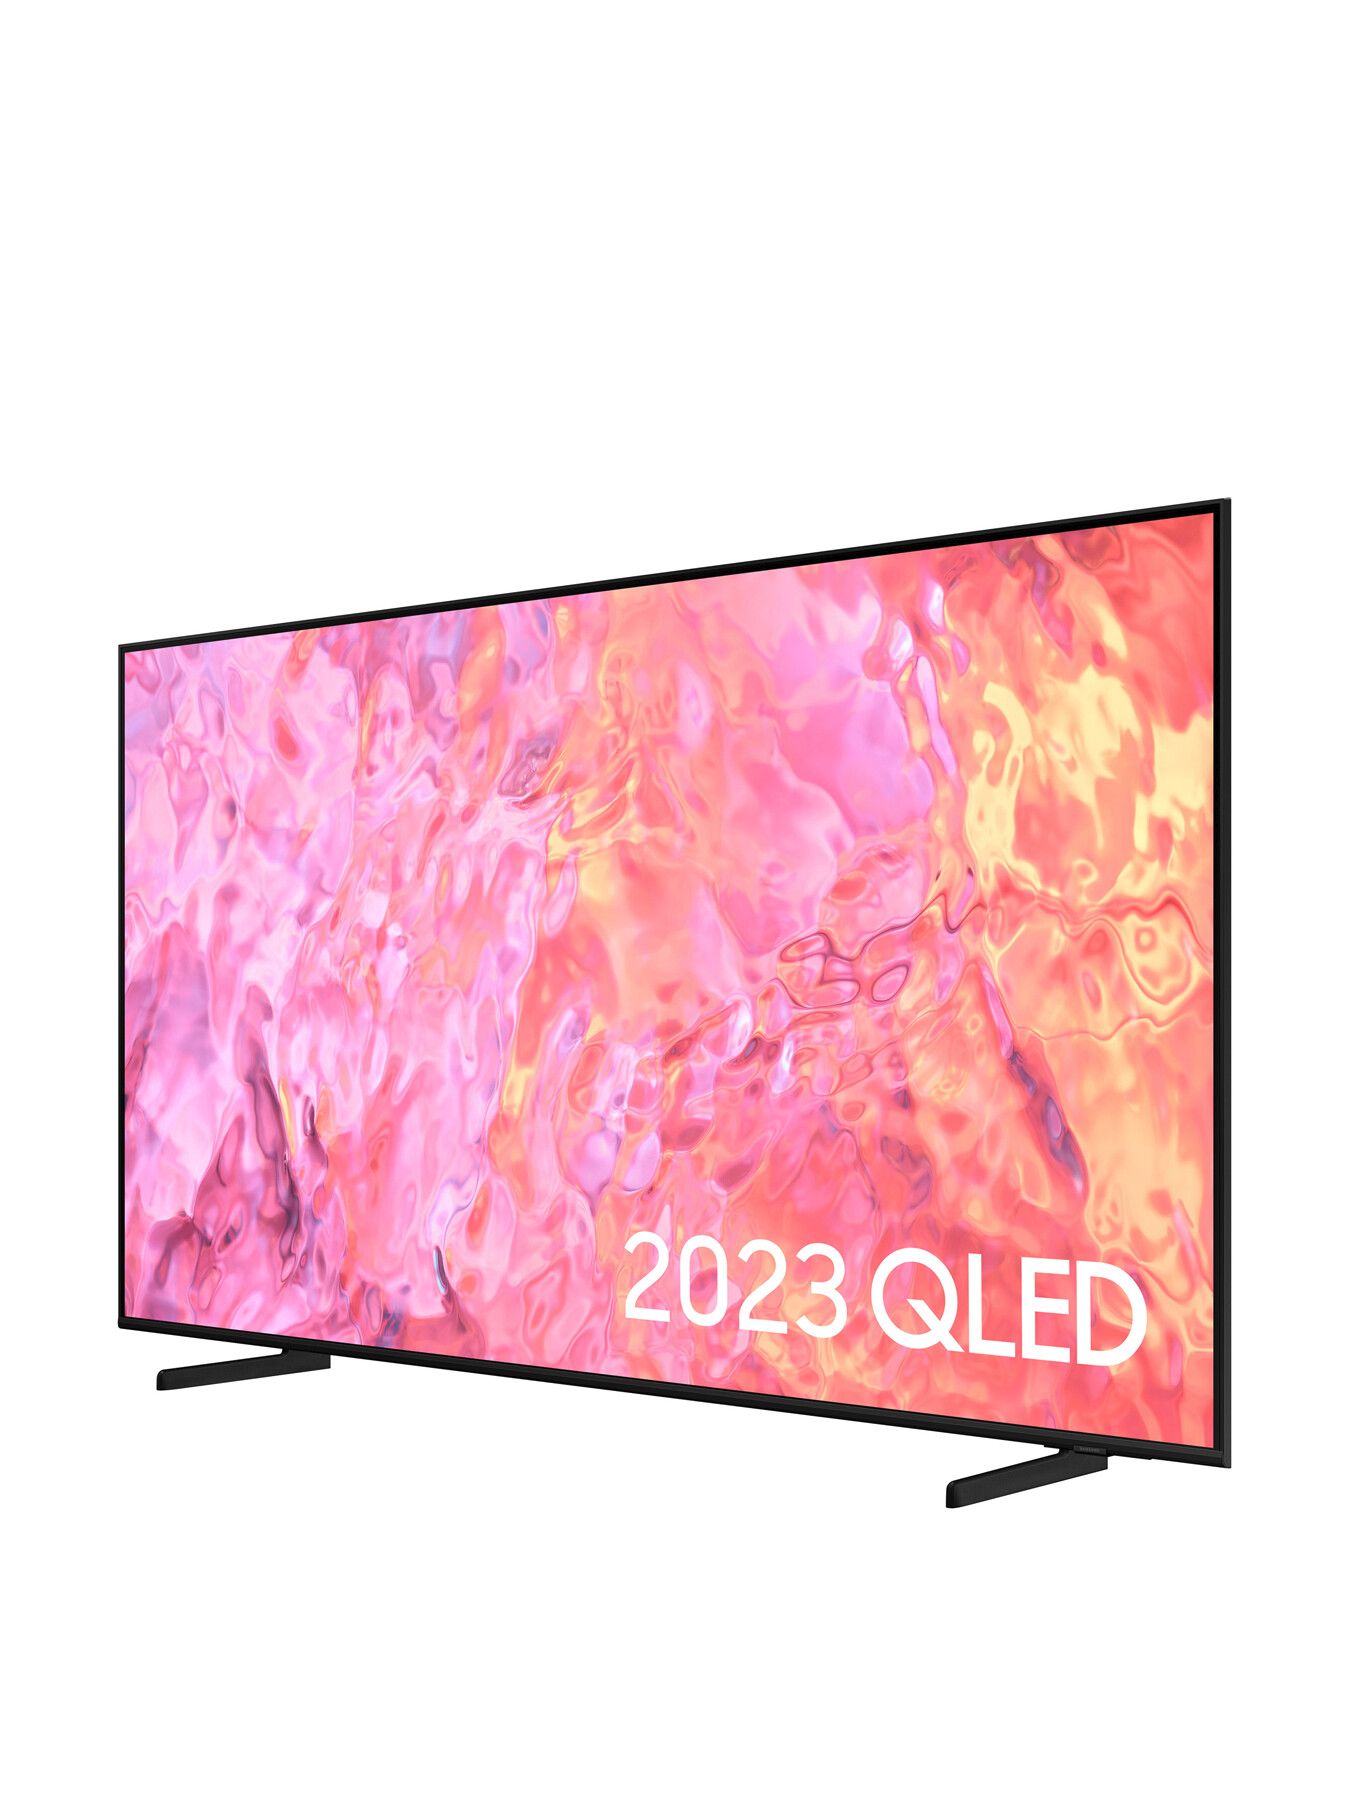 Samsung QE50Q60 QLED HDR 4k Smart TV50 Inch (2023) | Fenwick